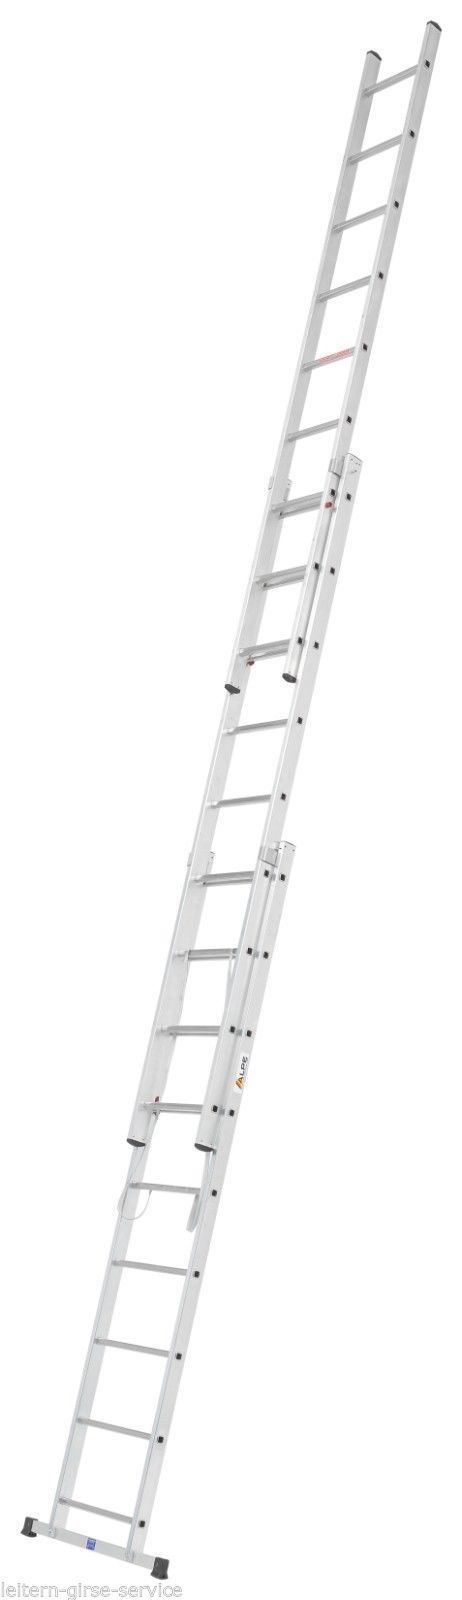 Allemaal Vluchtig scheiden Combination Ladders | Reform Ladder | Multi Ladders Archives - Sterk Systems